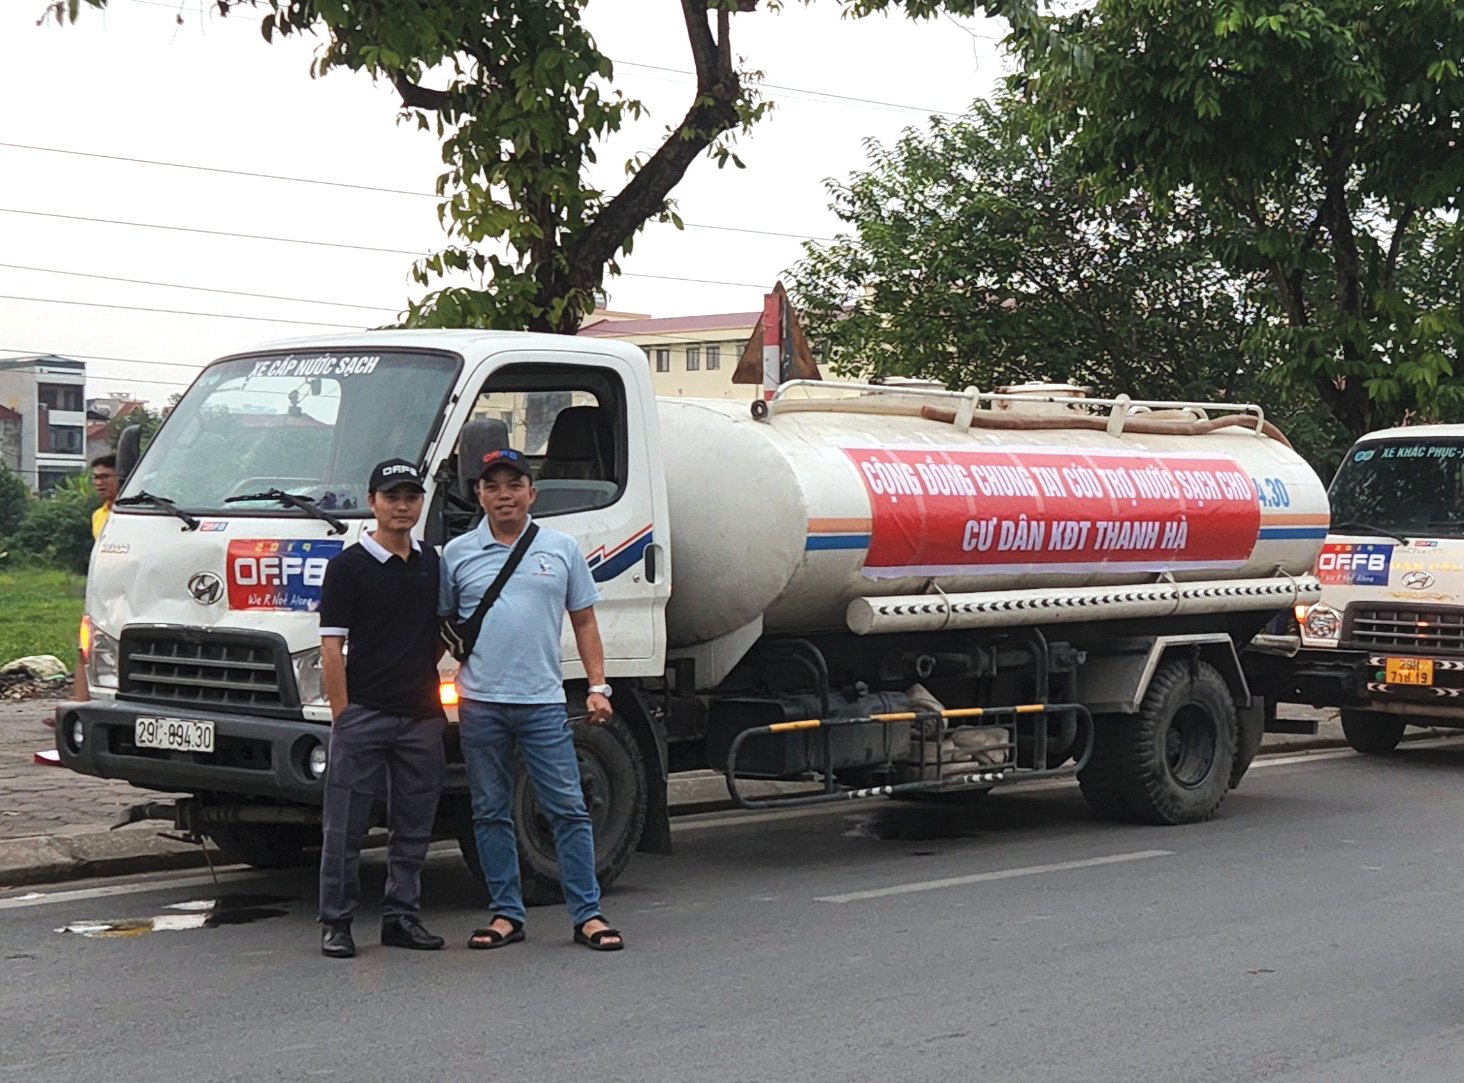 OF.FB cứu trợ đồng bào bị lũ lụt tại miền Trung tháng 11-2020, hỗ trợ cung cấp nước sạch cho cư dân khu đô thị Thanh Hà, Hà Nội tháng 10-2023